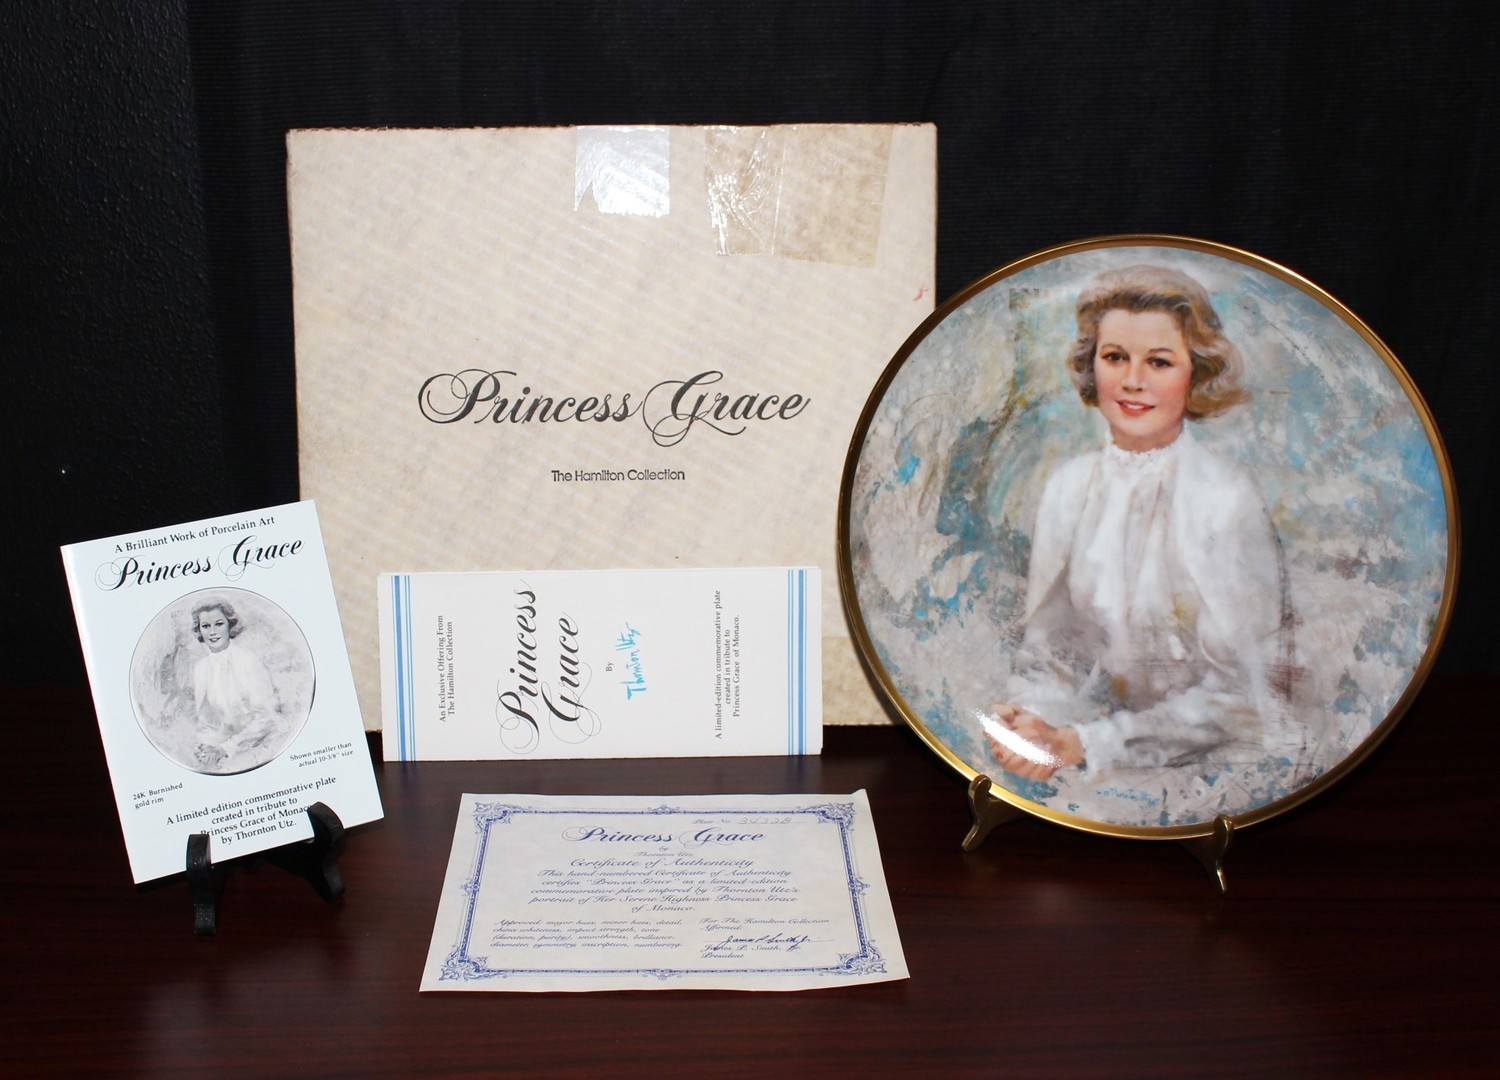 Hamilton “Princess Grace” 1983 Limited Edition Collectors Plate in Original Box